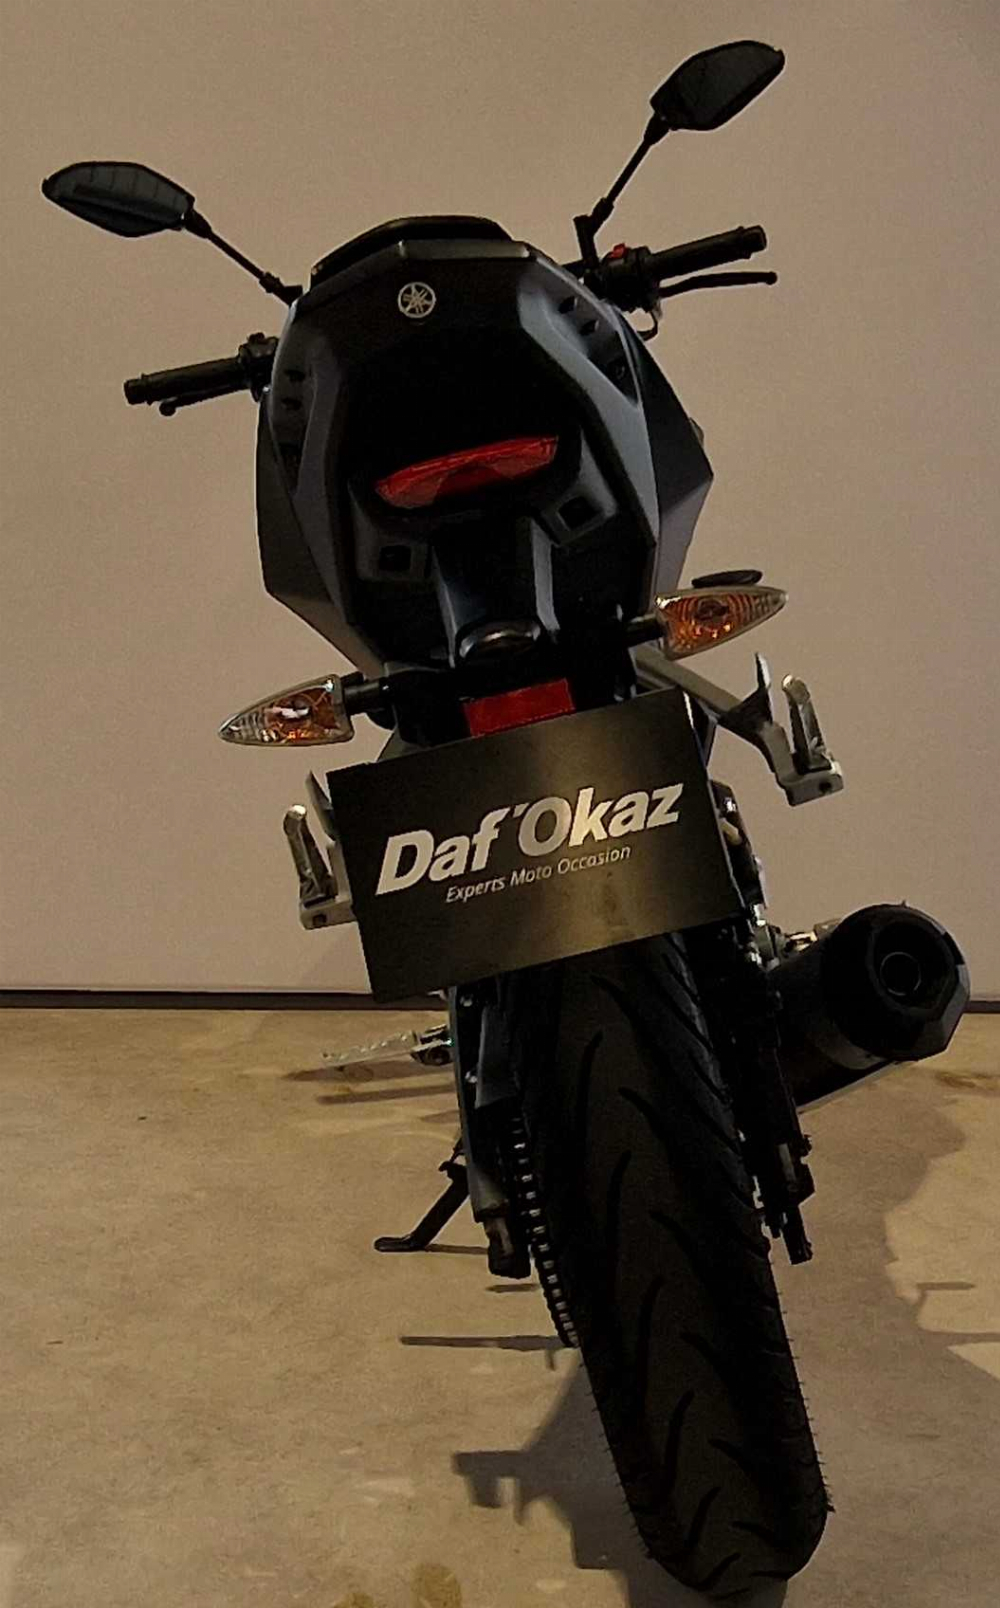 Yamaha MT 125 ABS 2018 vue arrière